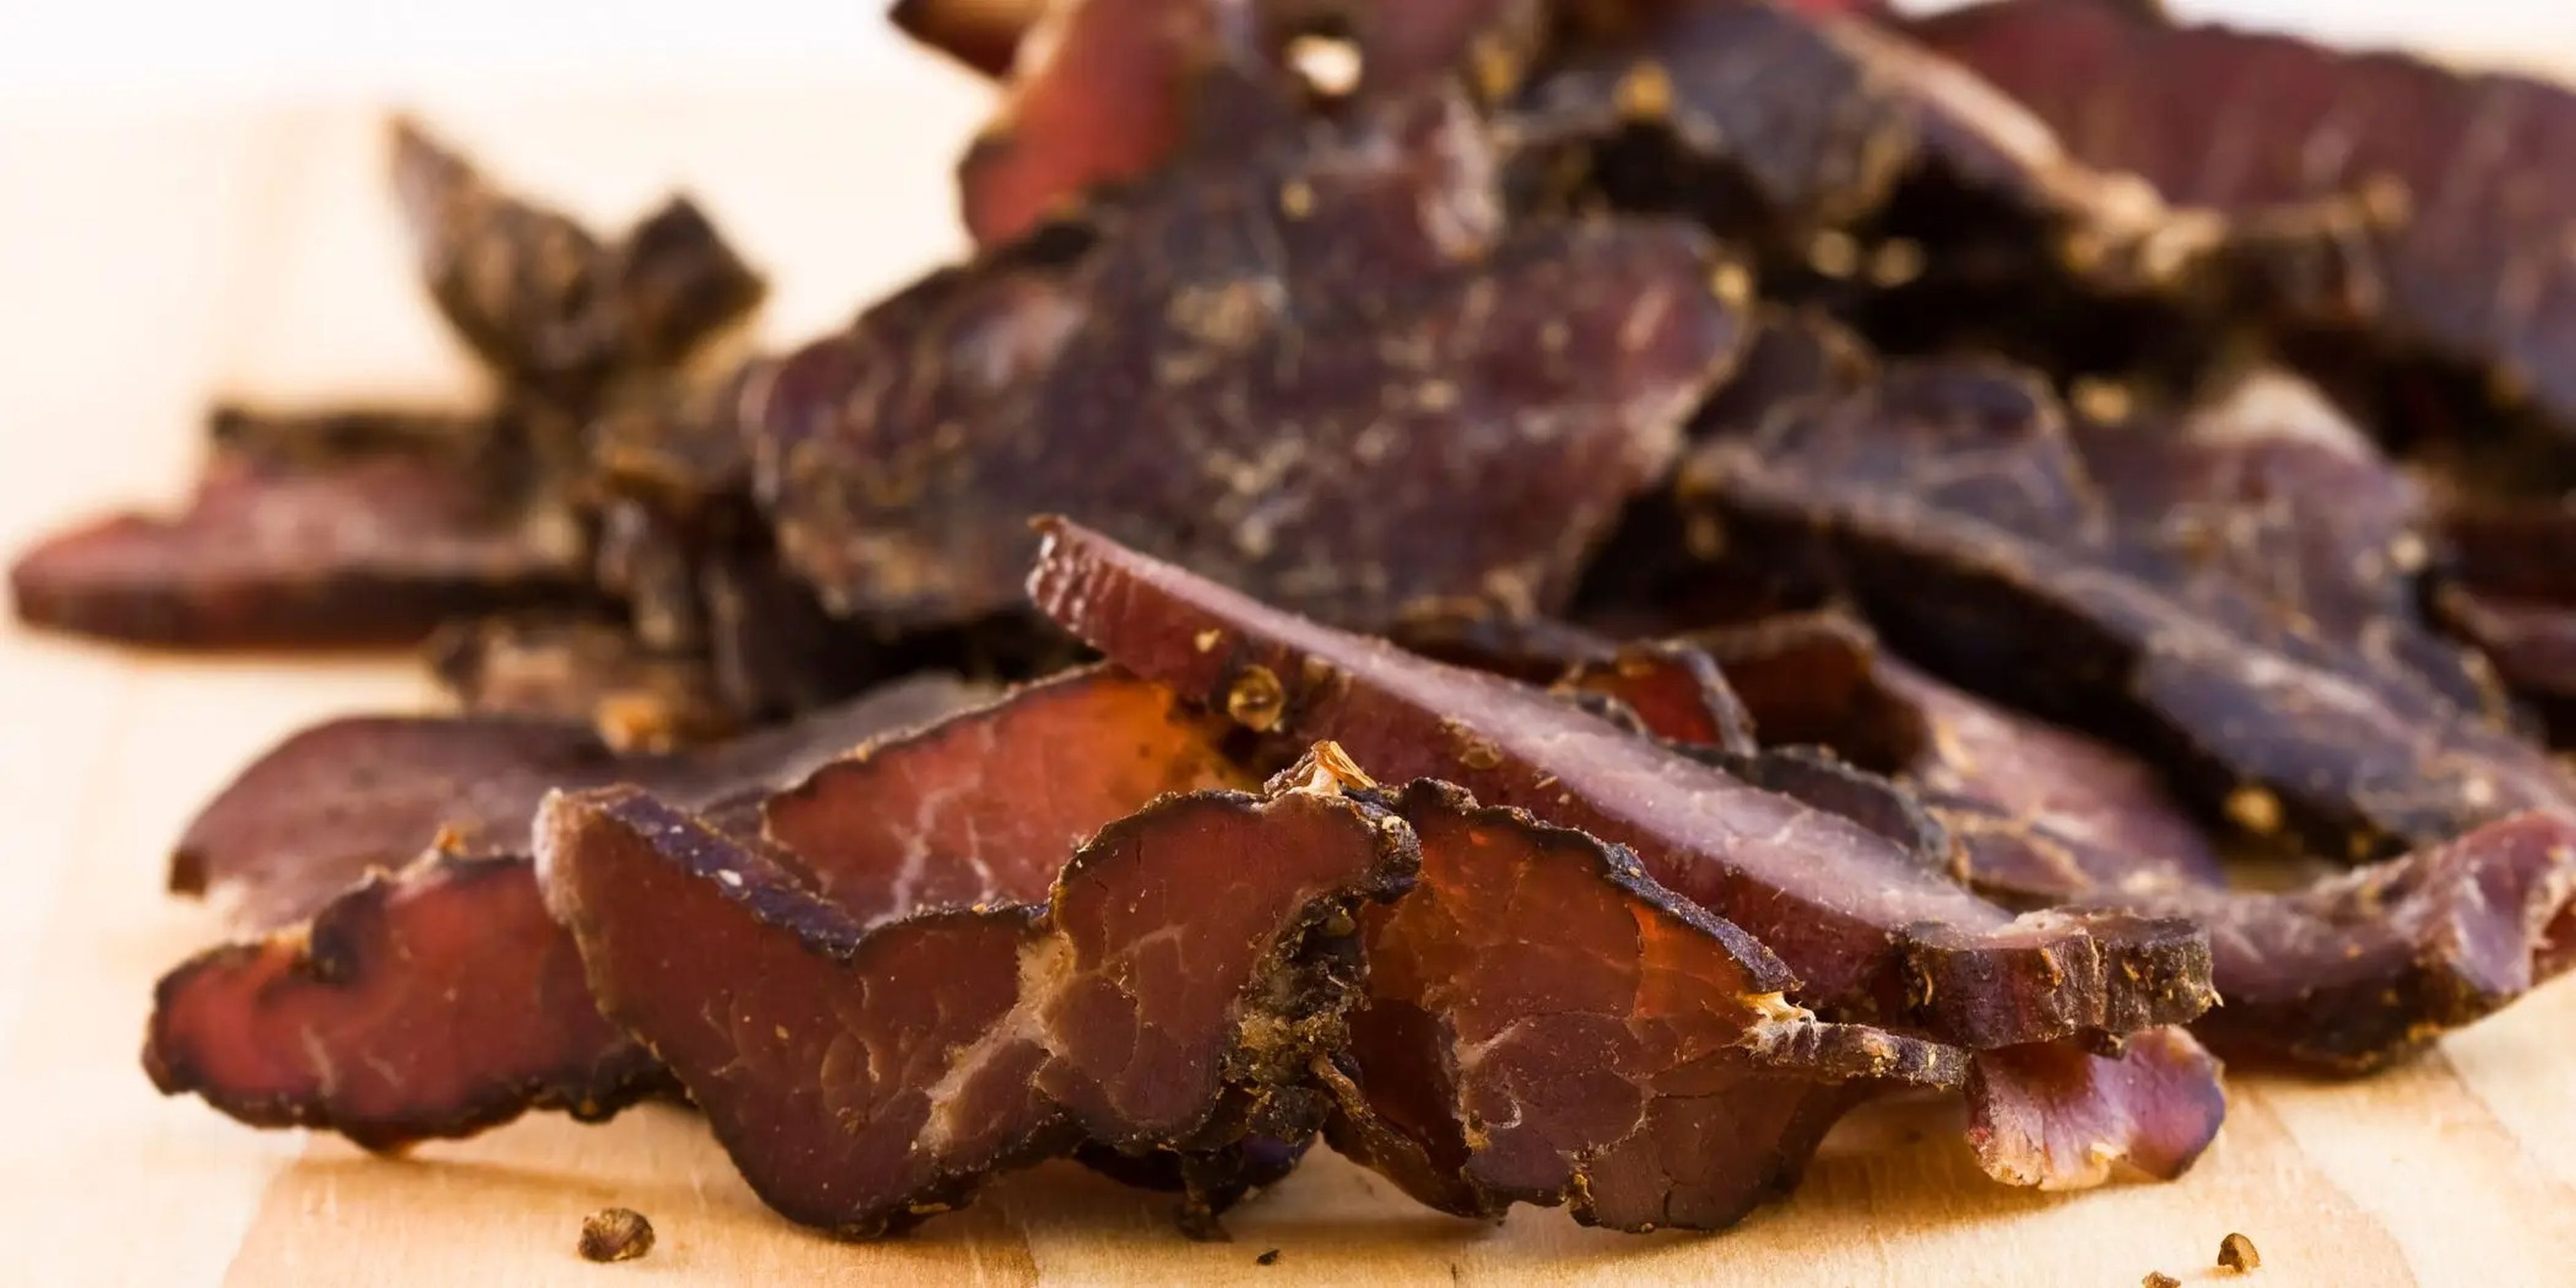 Las carnes procesadas como el tocino pueden causar inflamación.